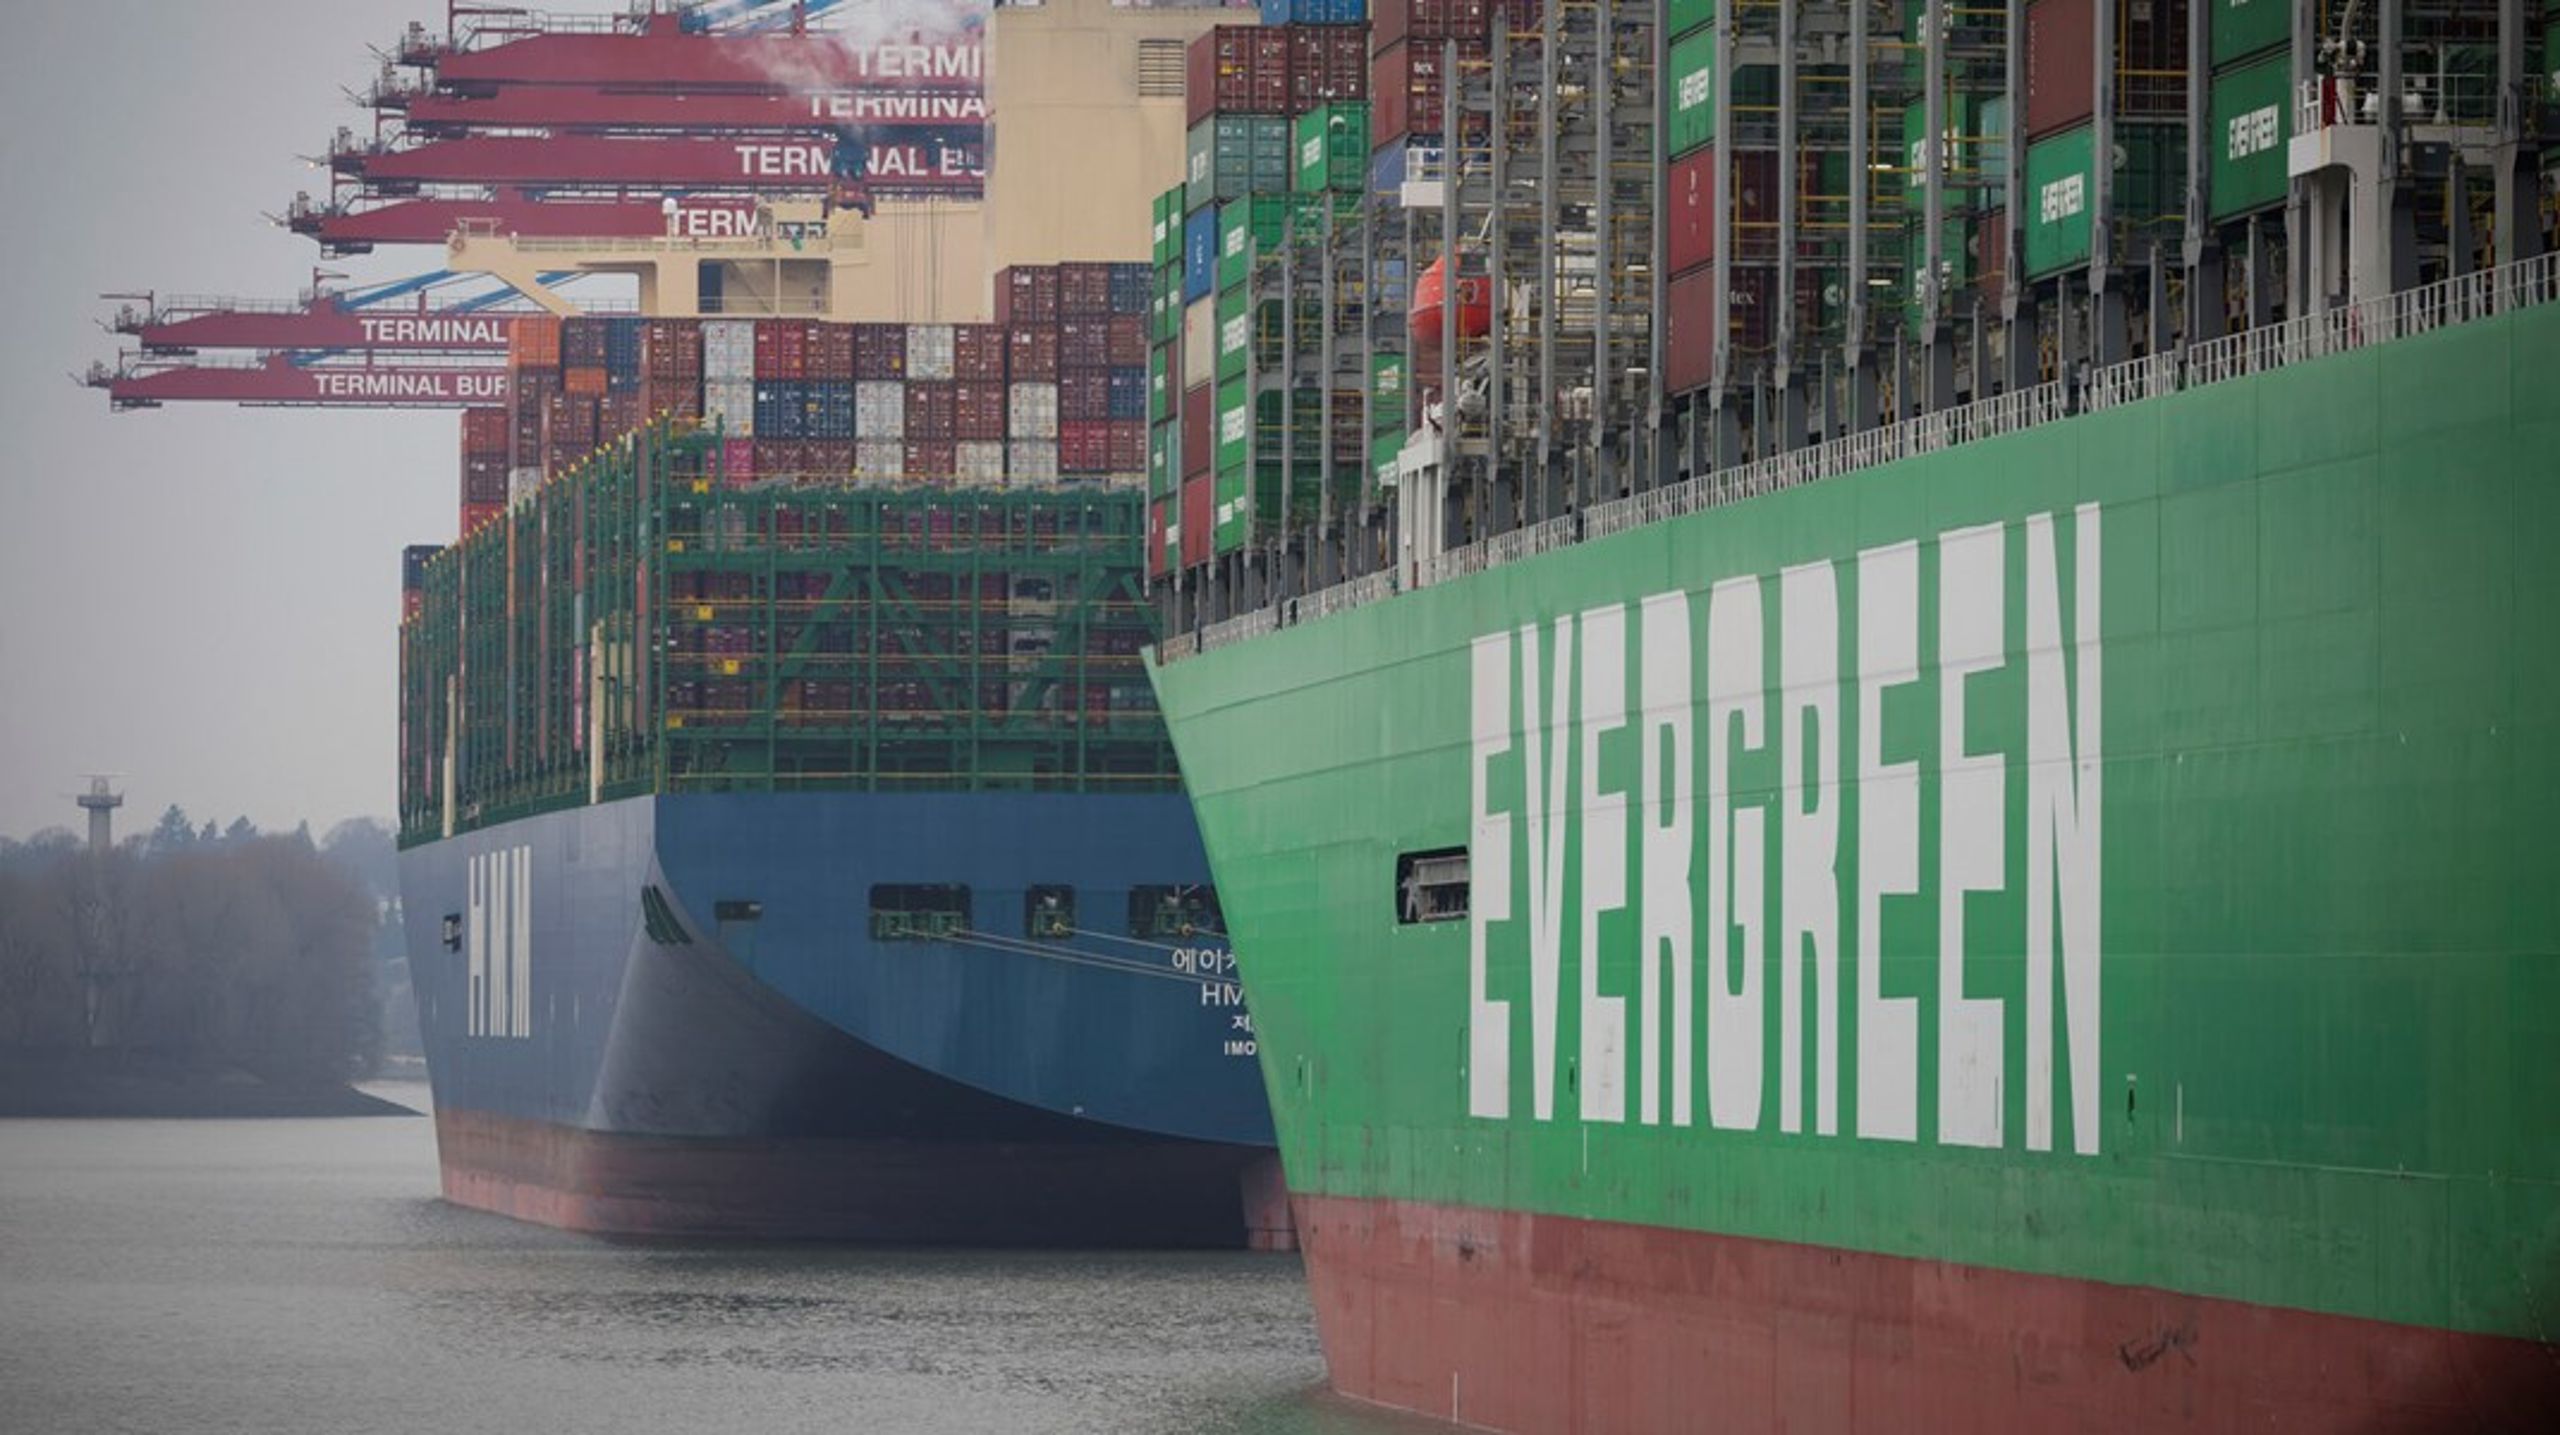 Shippingbranchen er én af verdens største udledere af klimaskadelige
drivhusgasser. Sektoren står alene for cirka to til tre procent af de globale
udledninger, men transporterer samtidig cirka 90 procent af verdenshandlen.